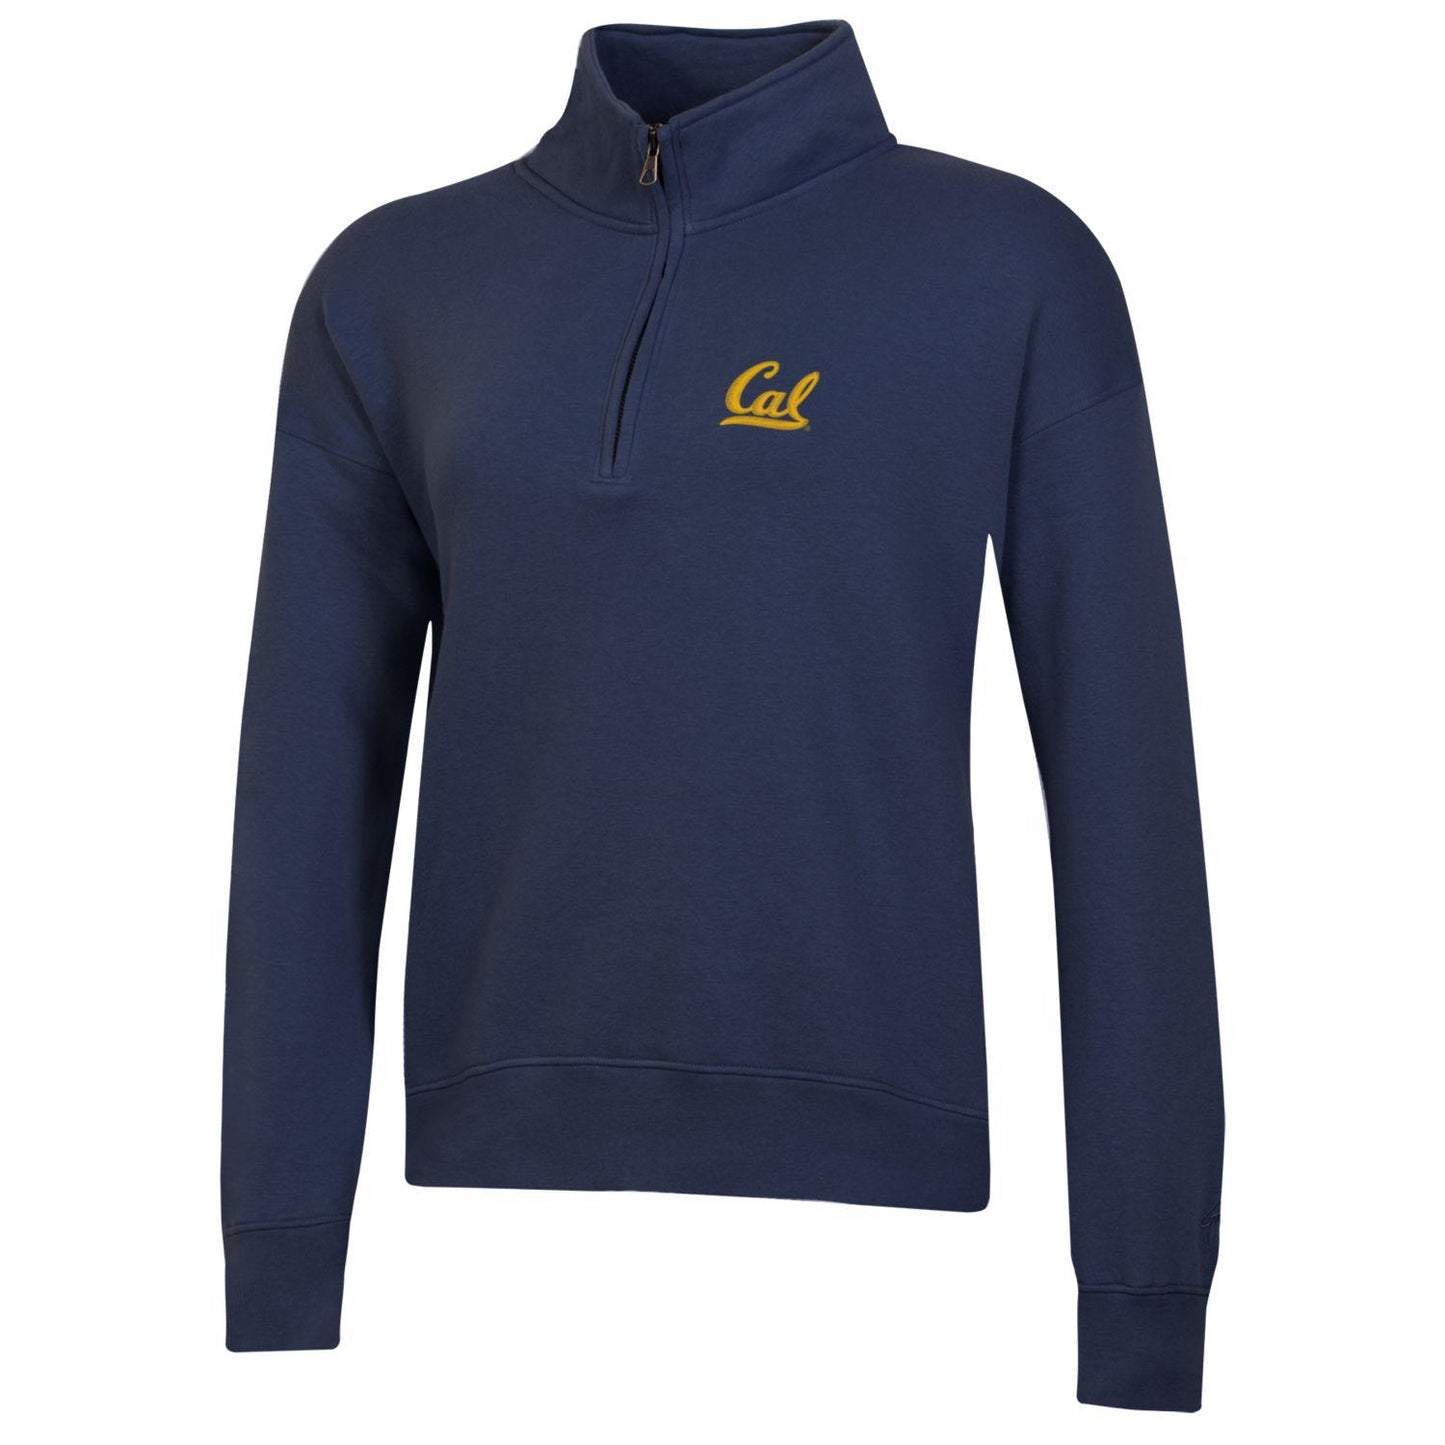 U.C. Berkeley Cal embroidered Big Cotton women's 1/4 Zip sweatshirt-Navy-Shop College Wear